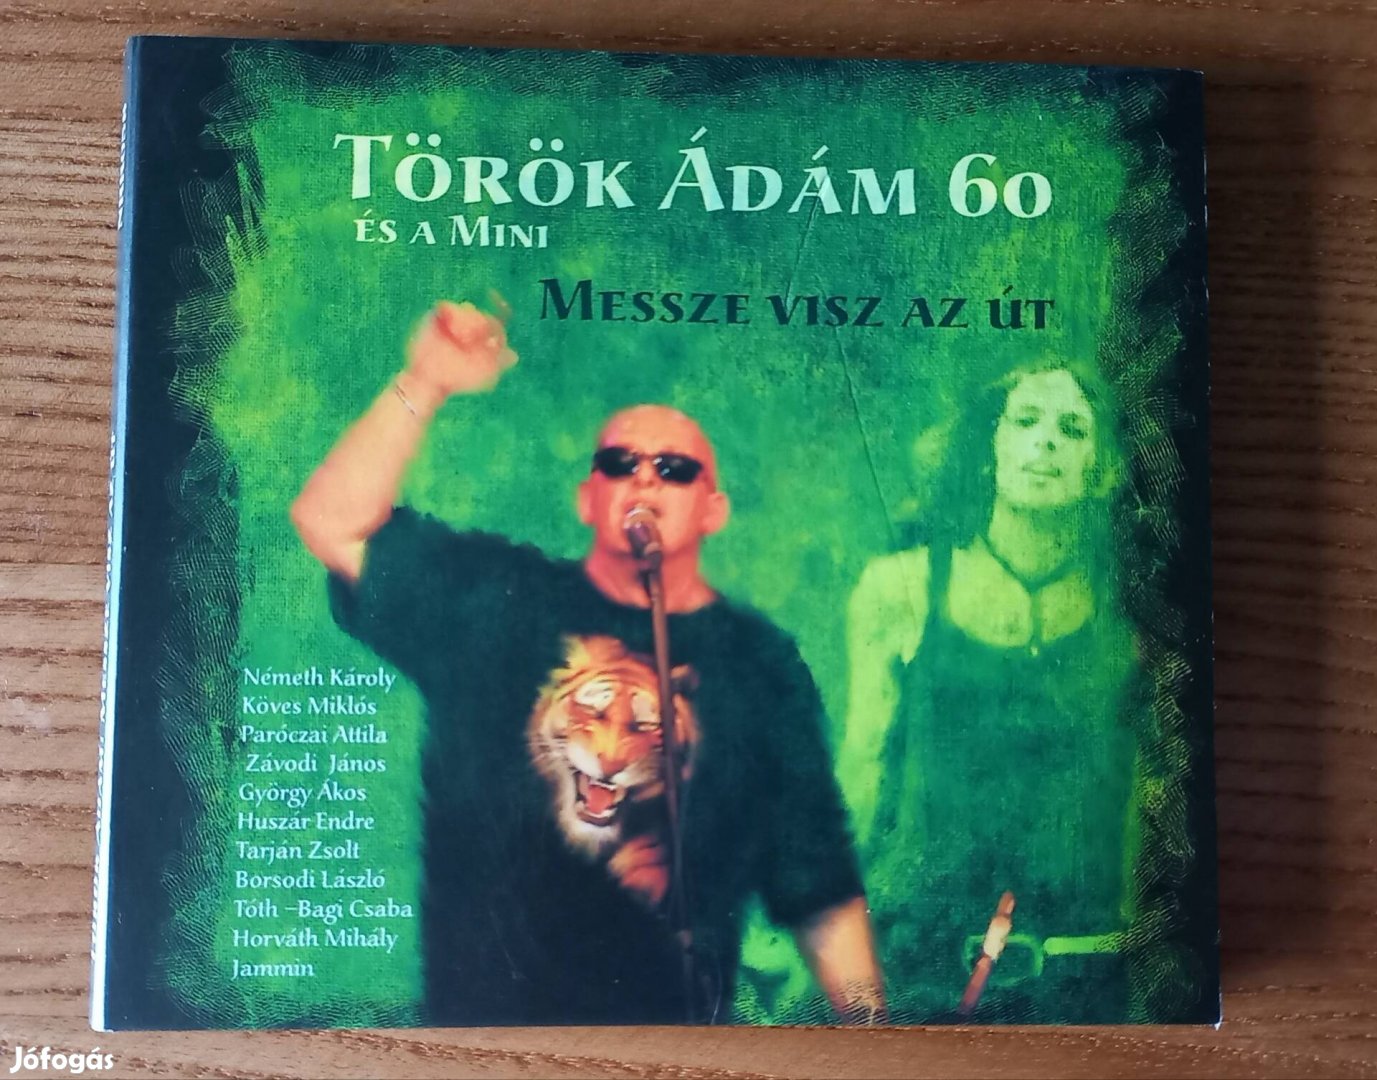 Török Ádám És A Mini - Messze Visz Az Út CD (2008)